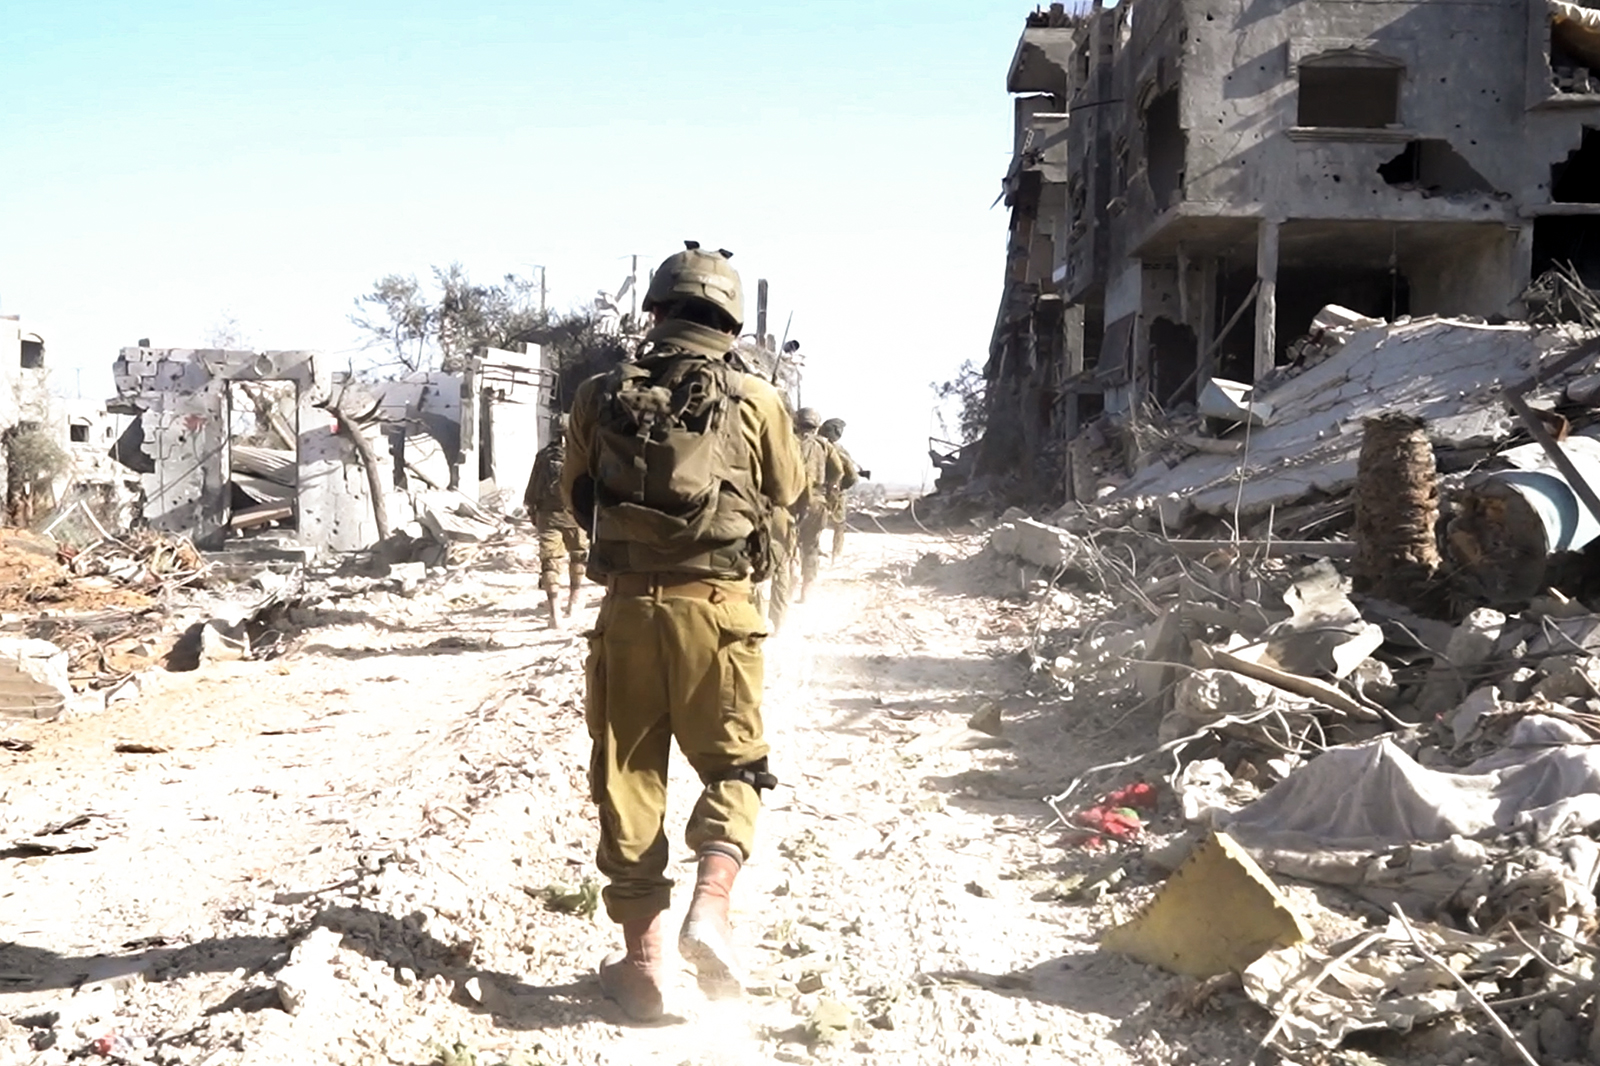 Un soldado israelí toma posición durante la operación terrestre en curso en Gaza, en esta imagen fija obtenida de un video publicado el 2 de diciembre.